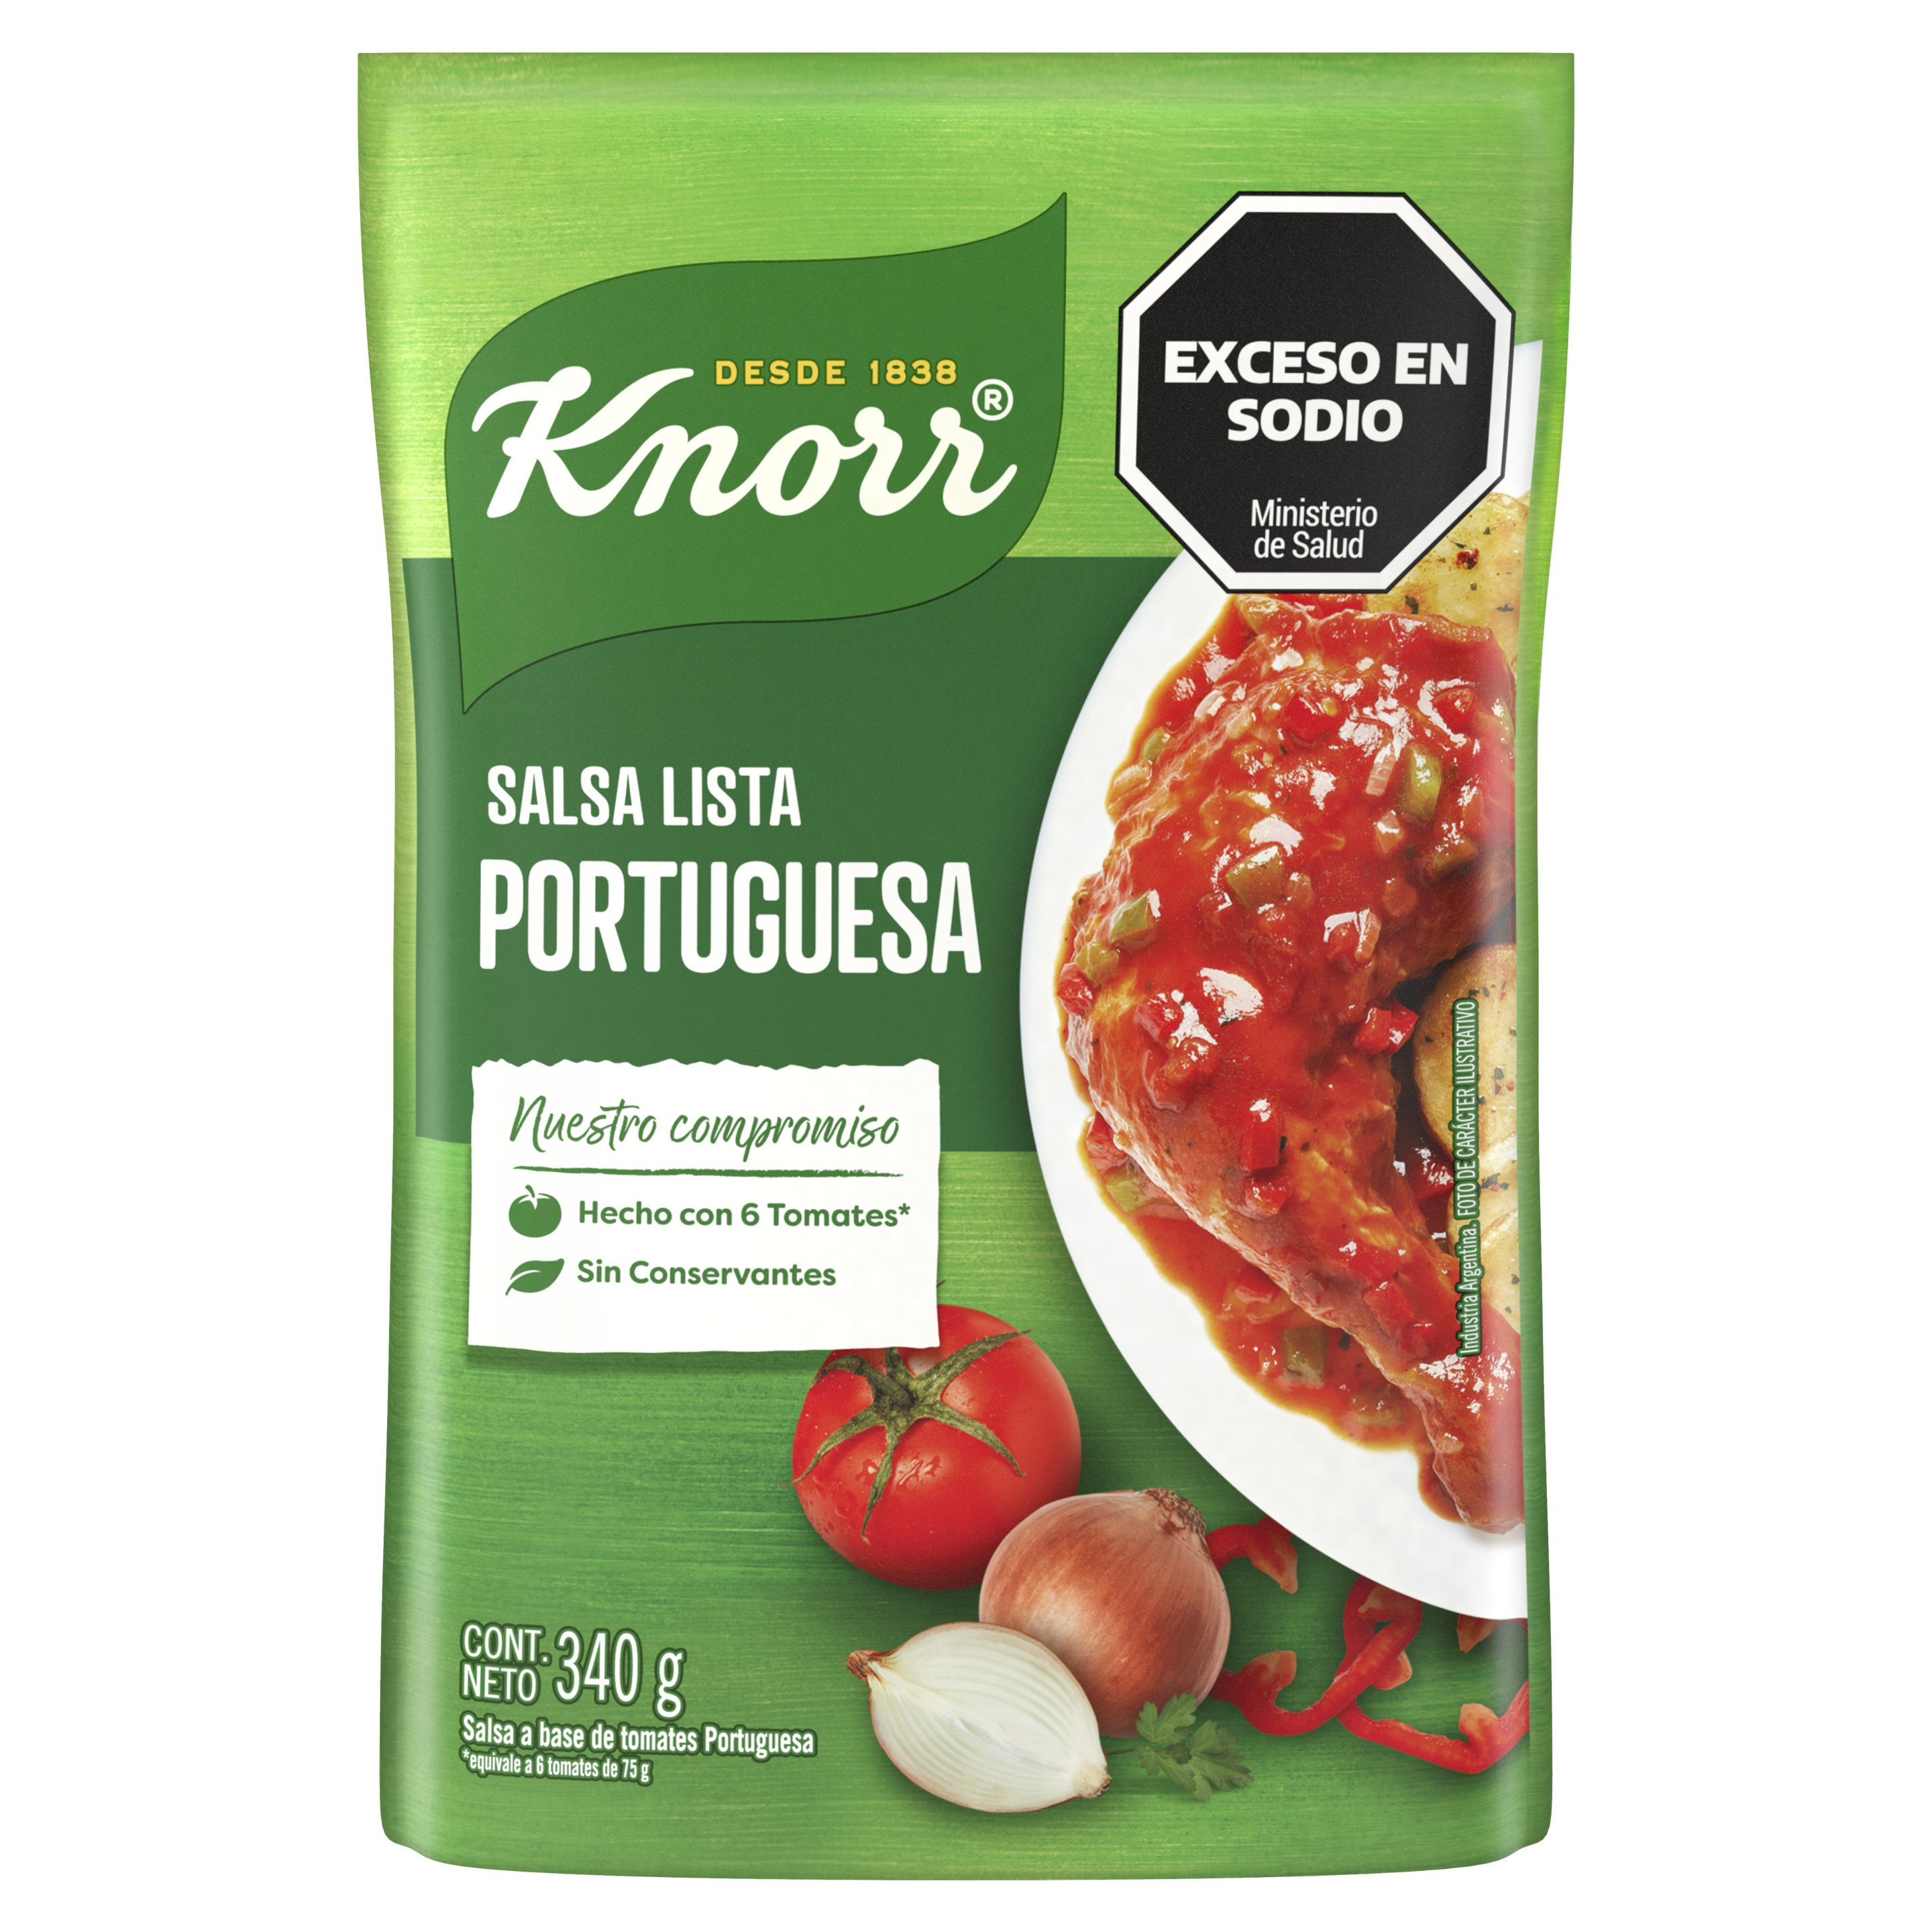 Imagen de envase Salsa List Portuguesa Knorr